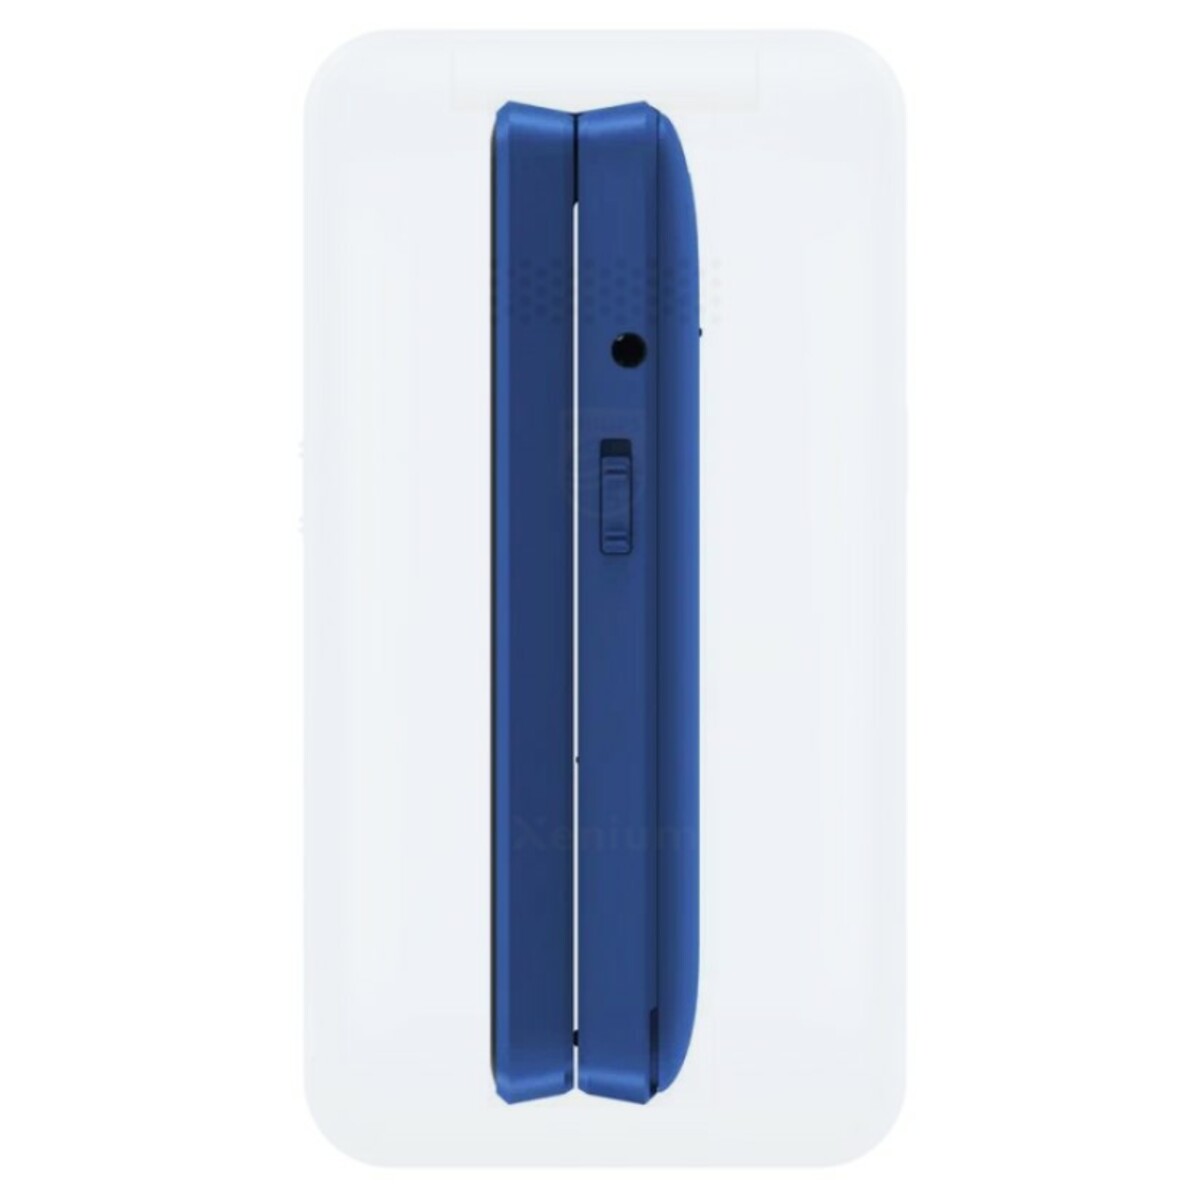 Мобильный телефон Philips E2602 Xenium (Цвет: Blue)